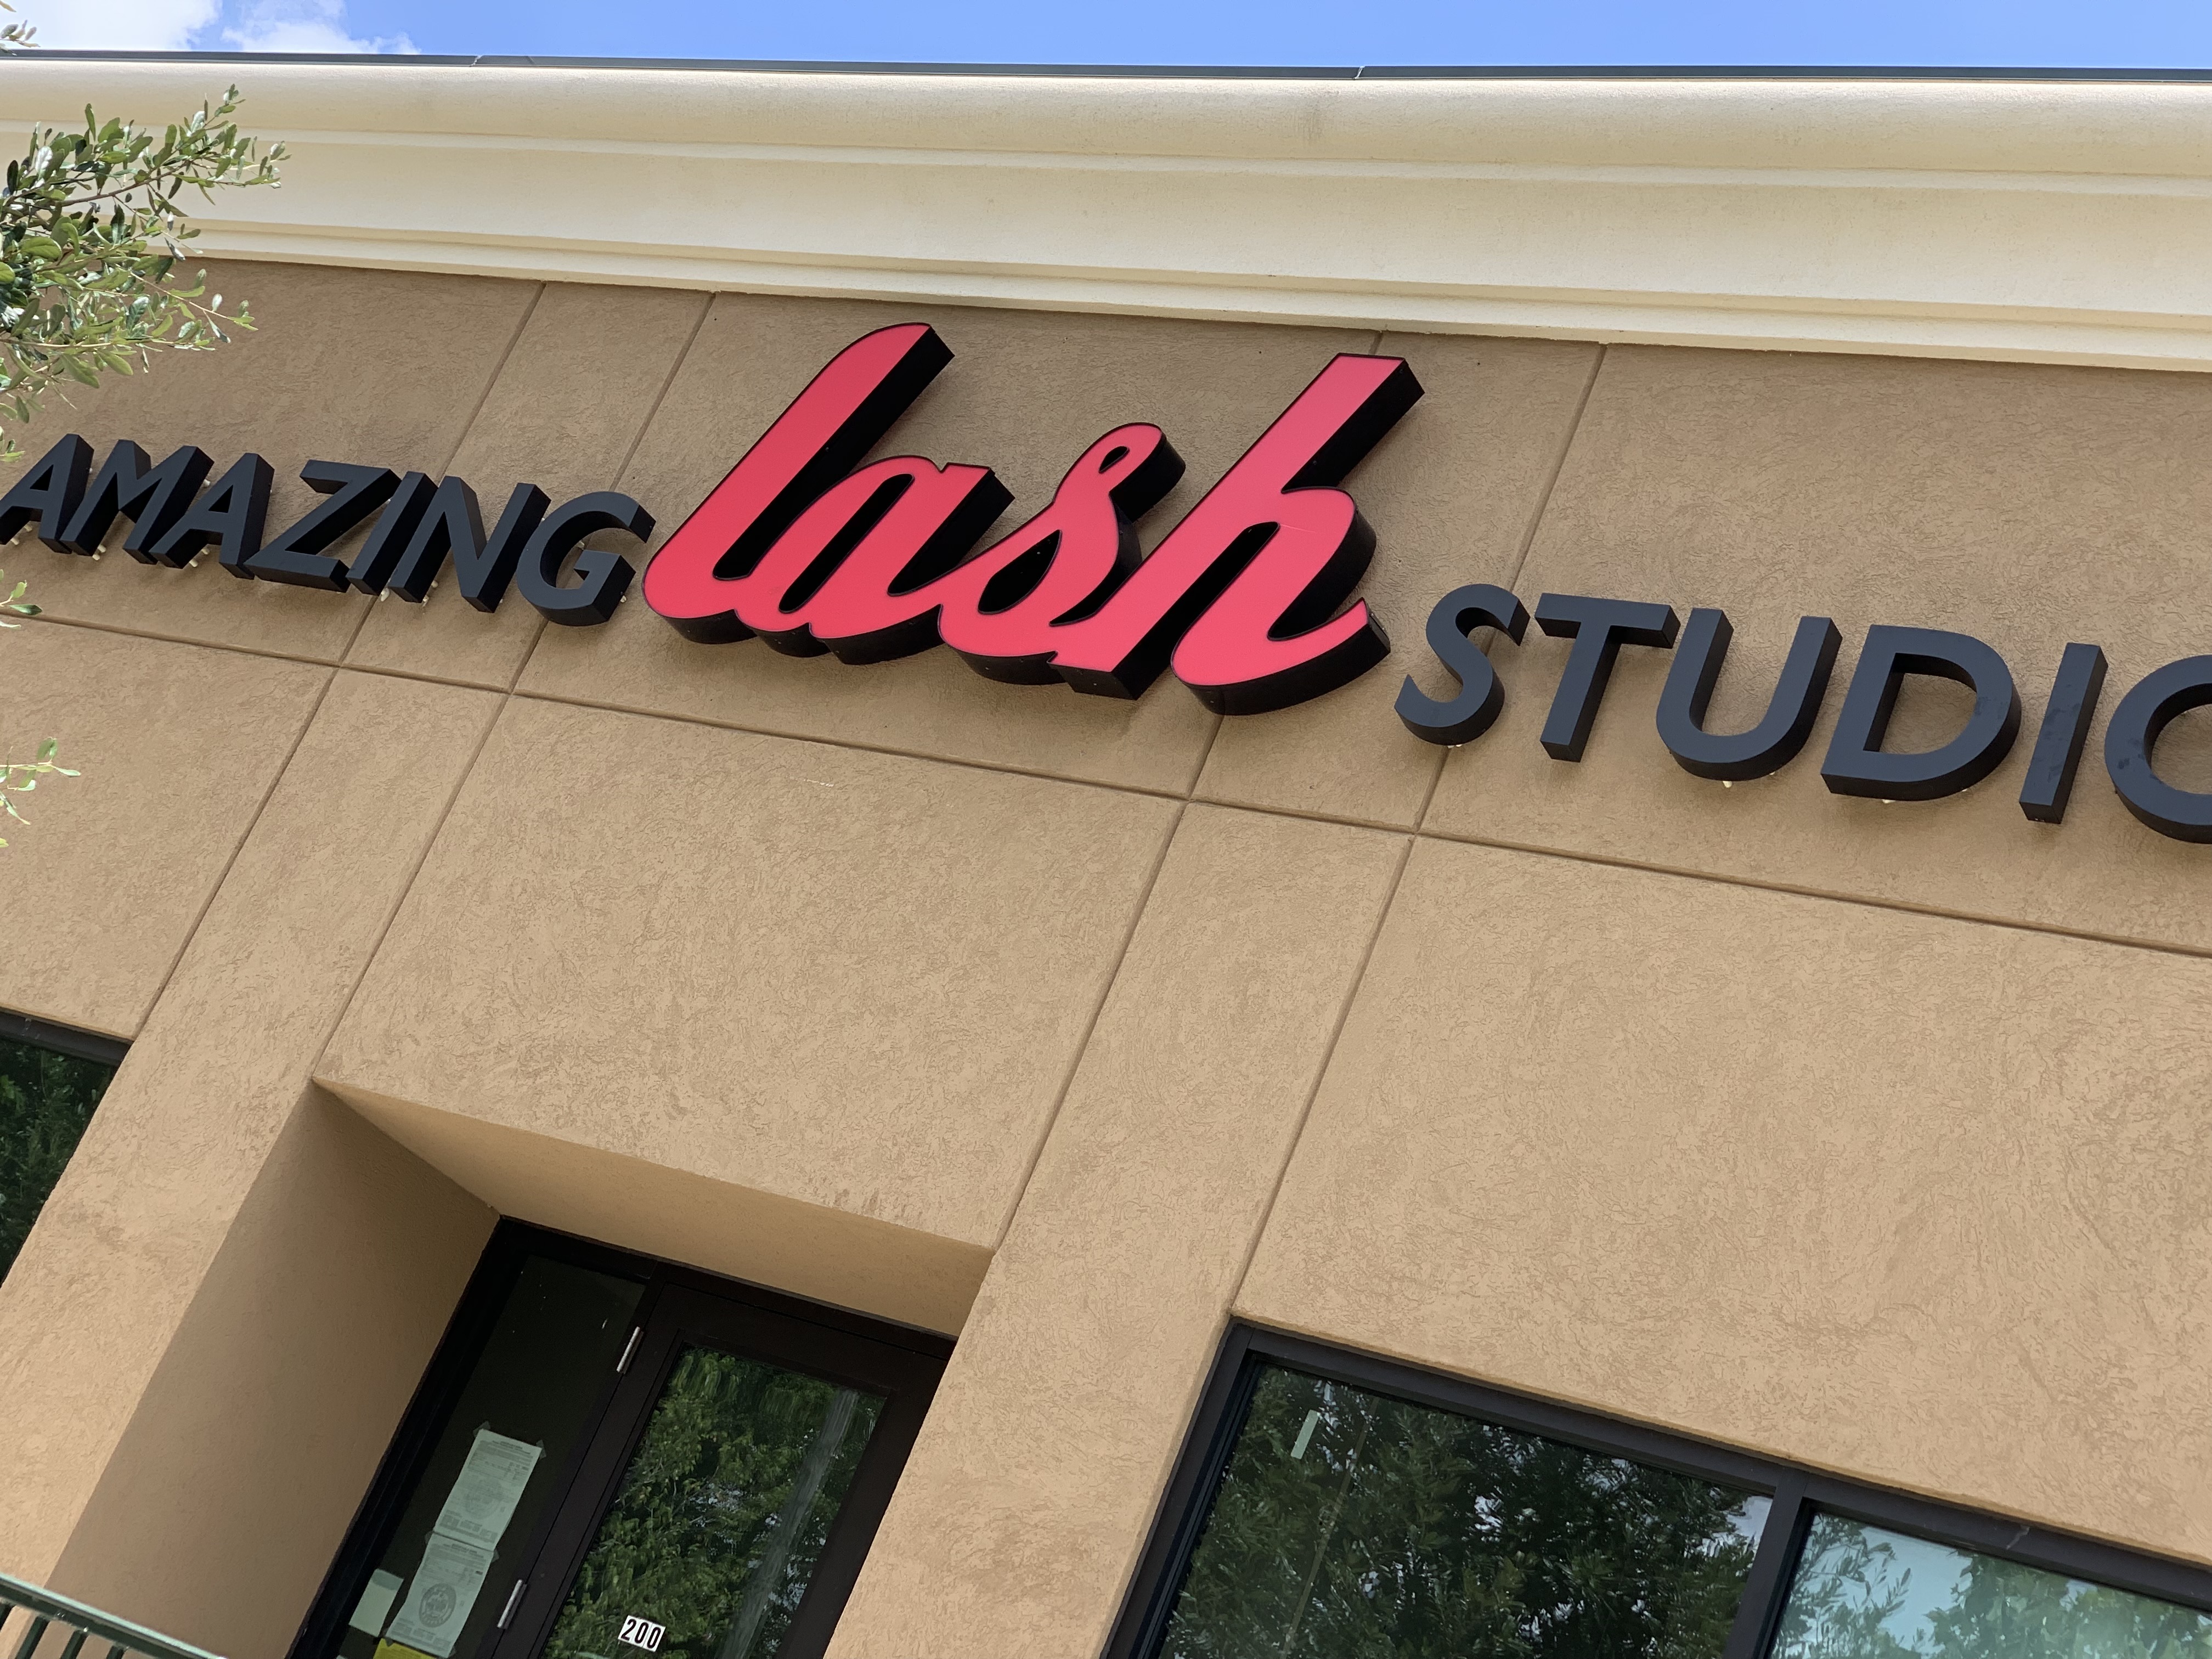 Amazing Lash Studio store sign